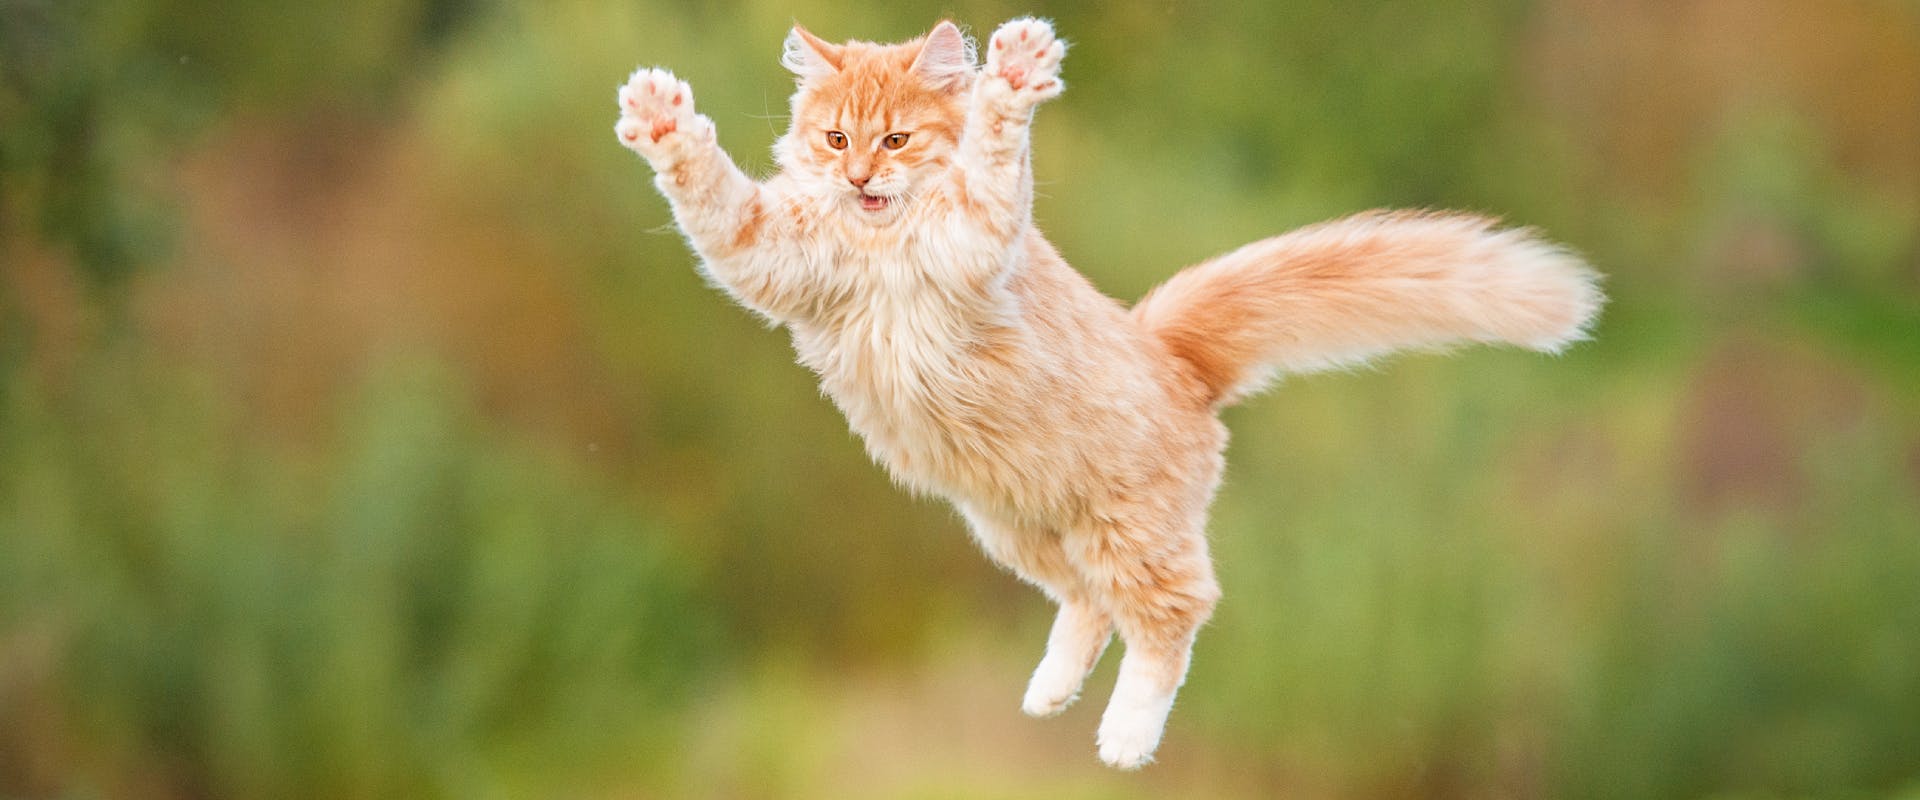 A cat jumps through the air.